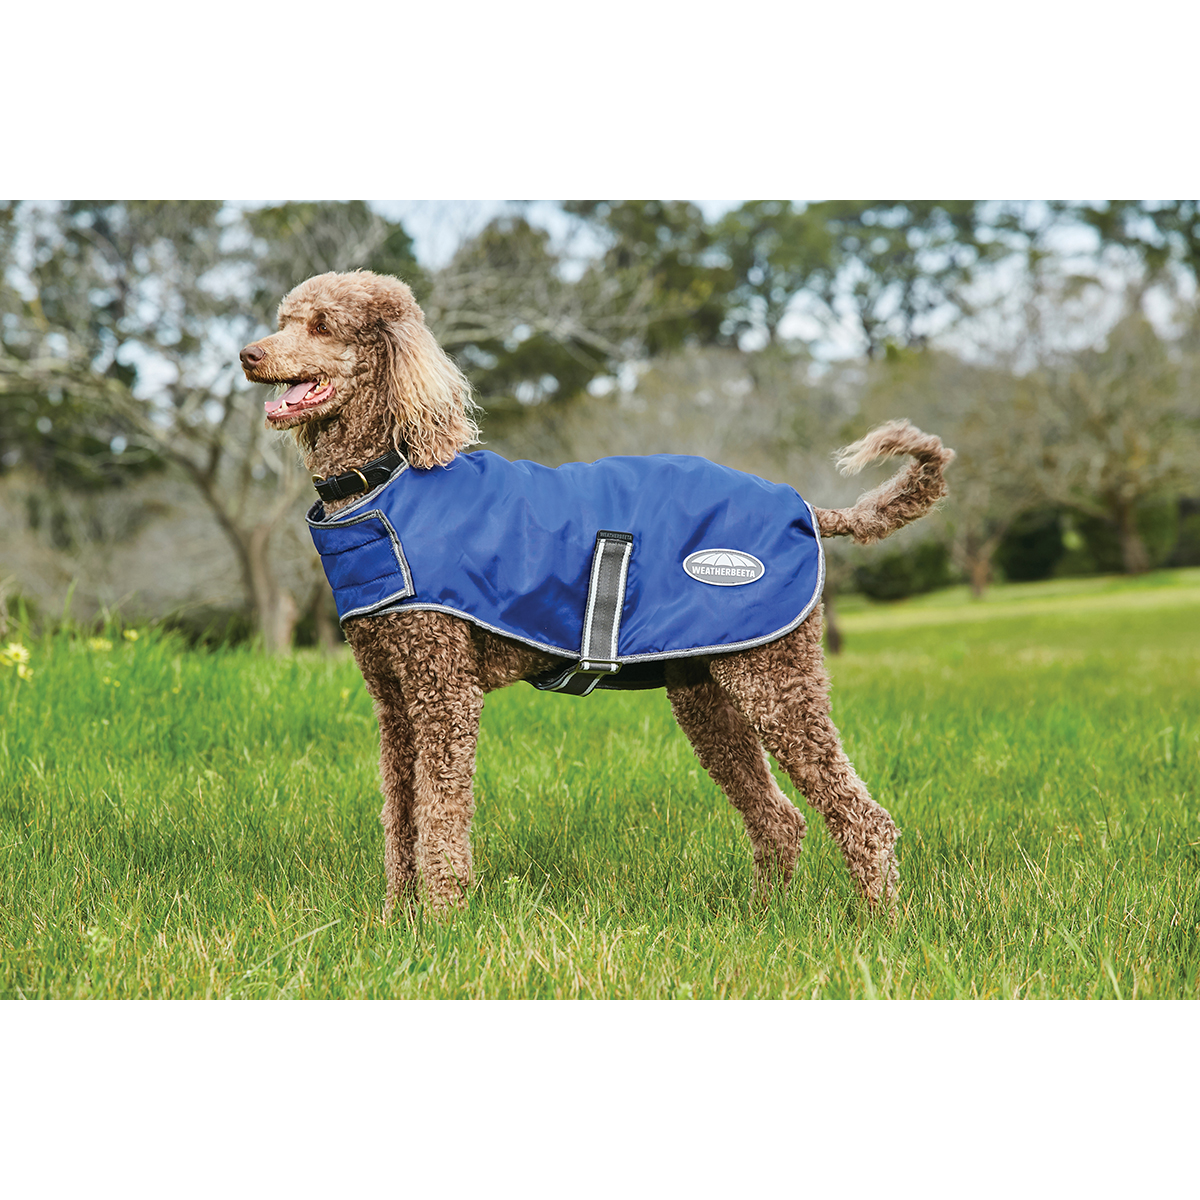 Hondendeken Weatherbeeta Comfitec Windbreaker Free Donkerblauw-zilver, 60 CM in donkerblauw/zilver